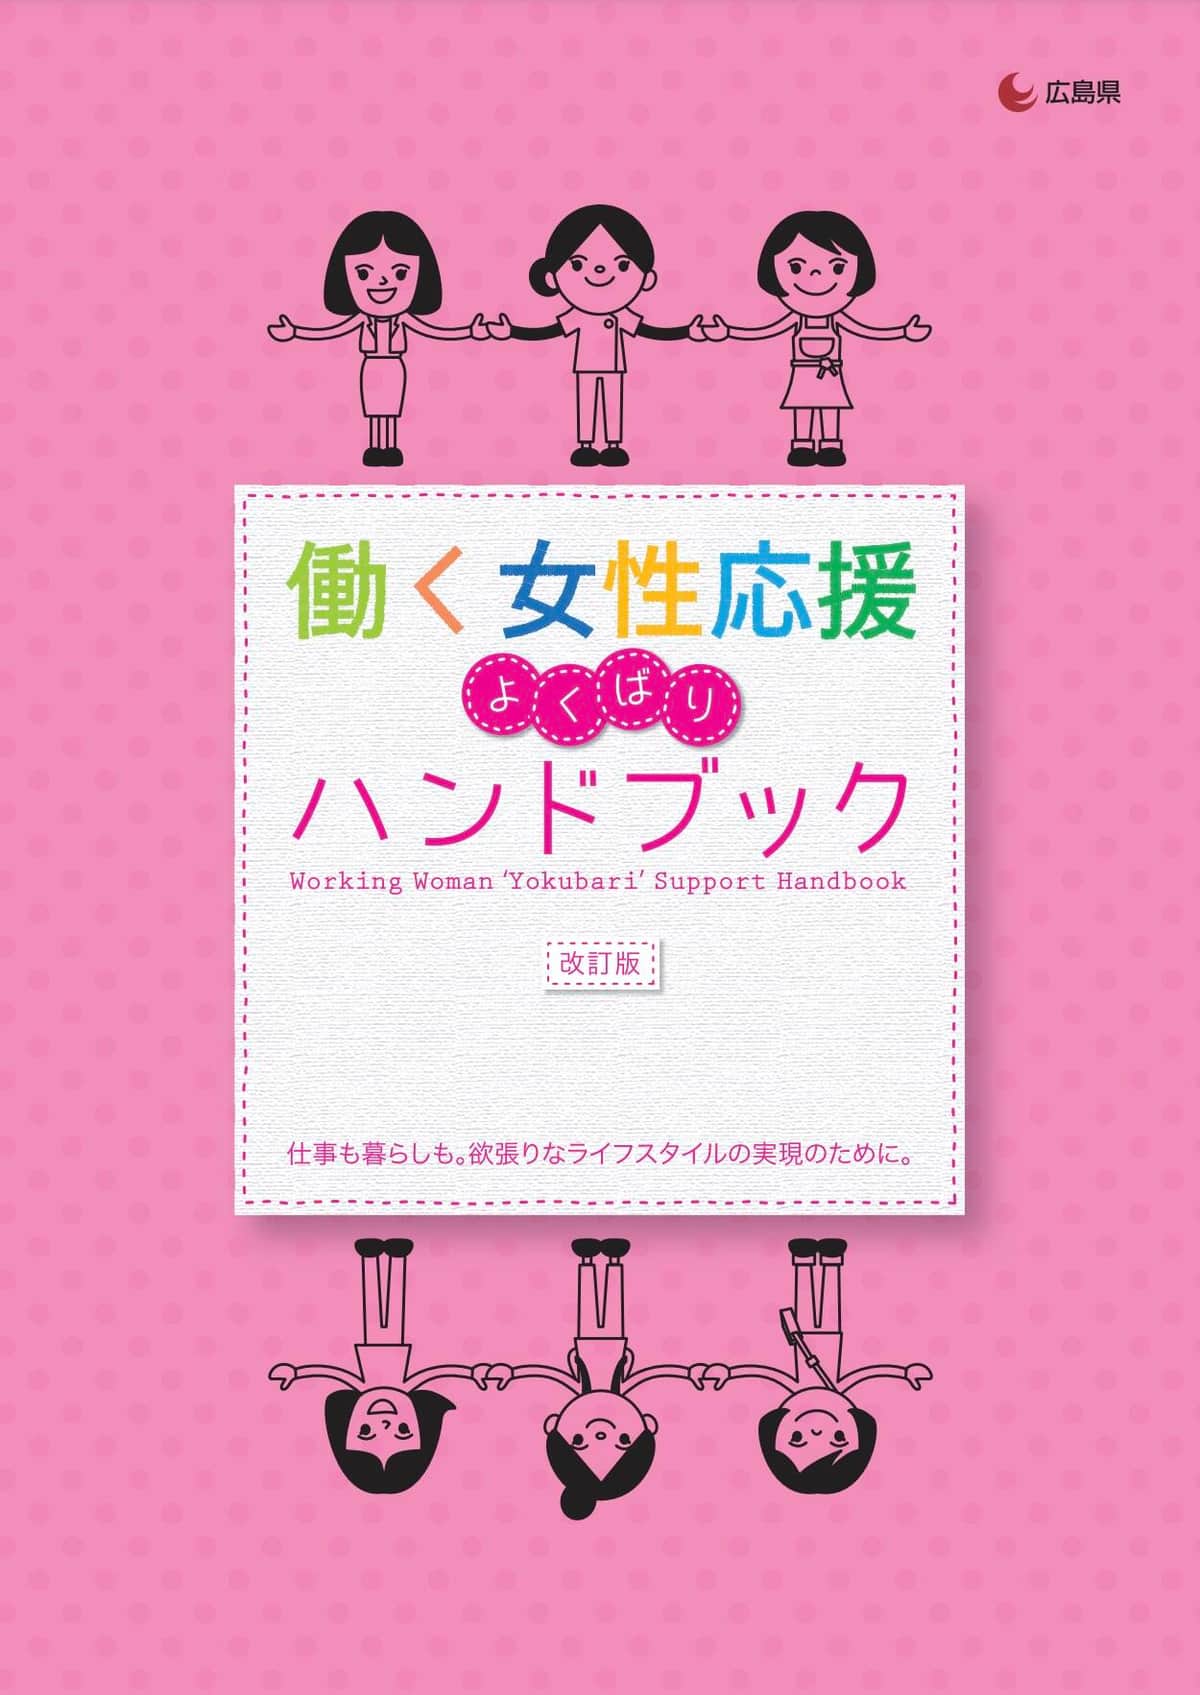 広島県が配布している「働く女性応援よくばりハンドブック」